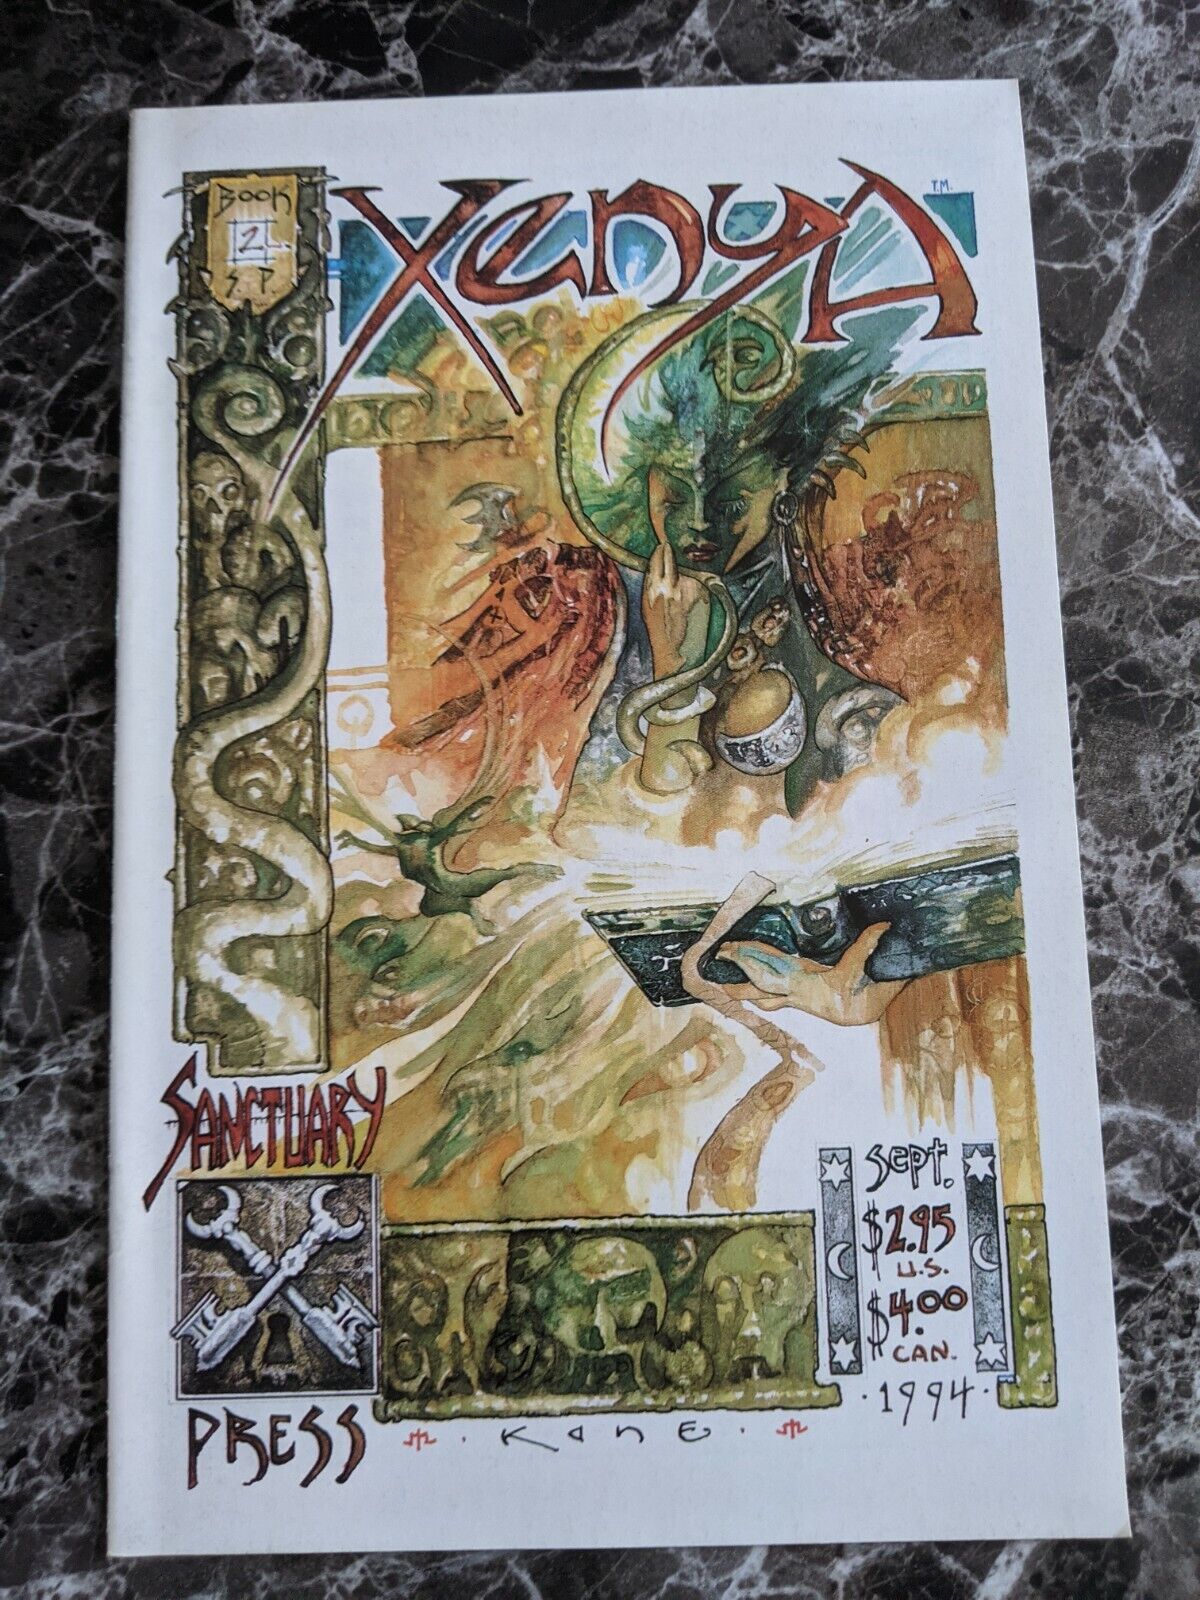 Xenya #2 1994 The Sanctuary Press Comics 